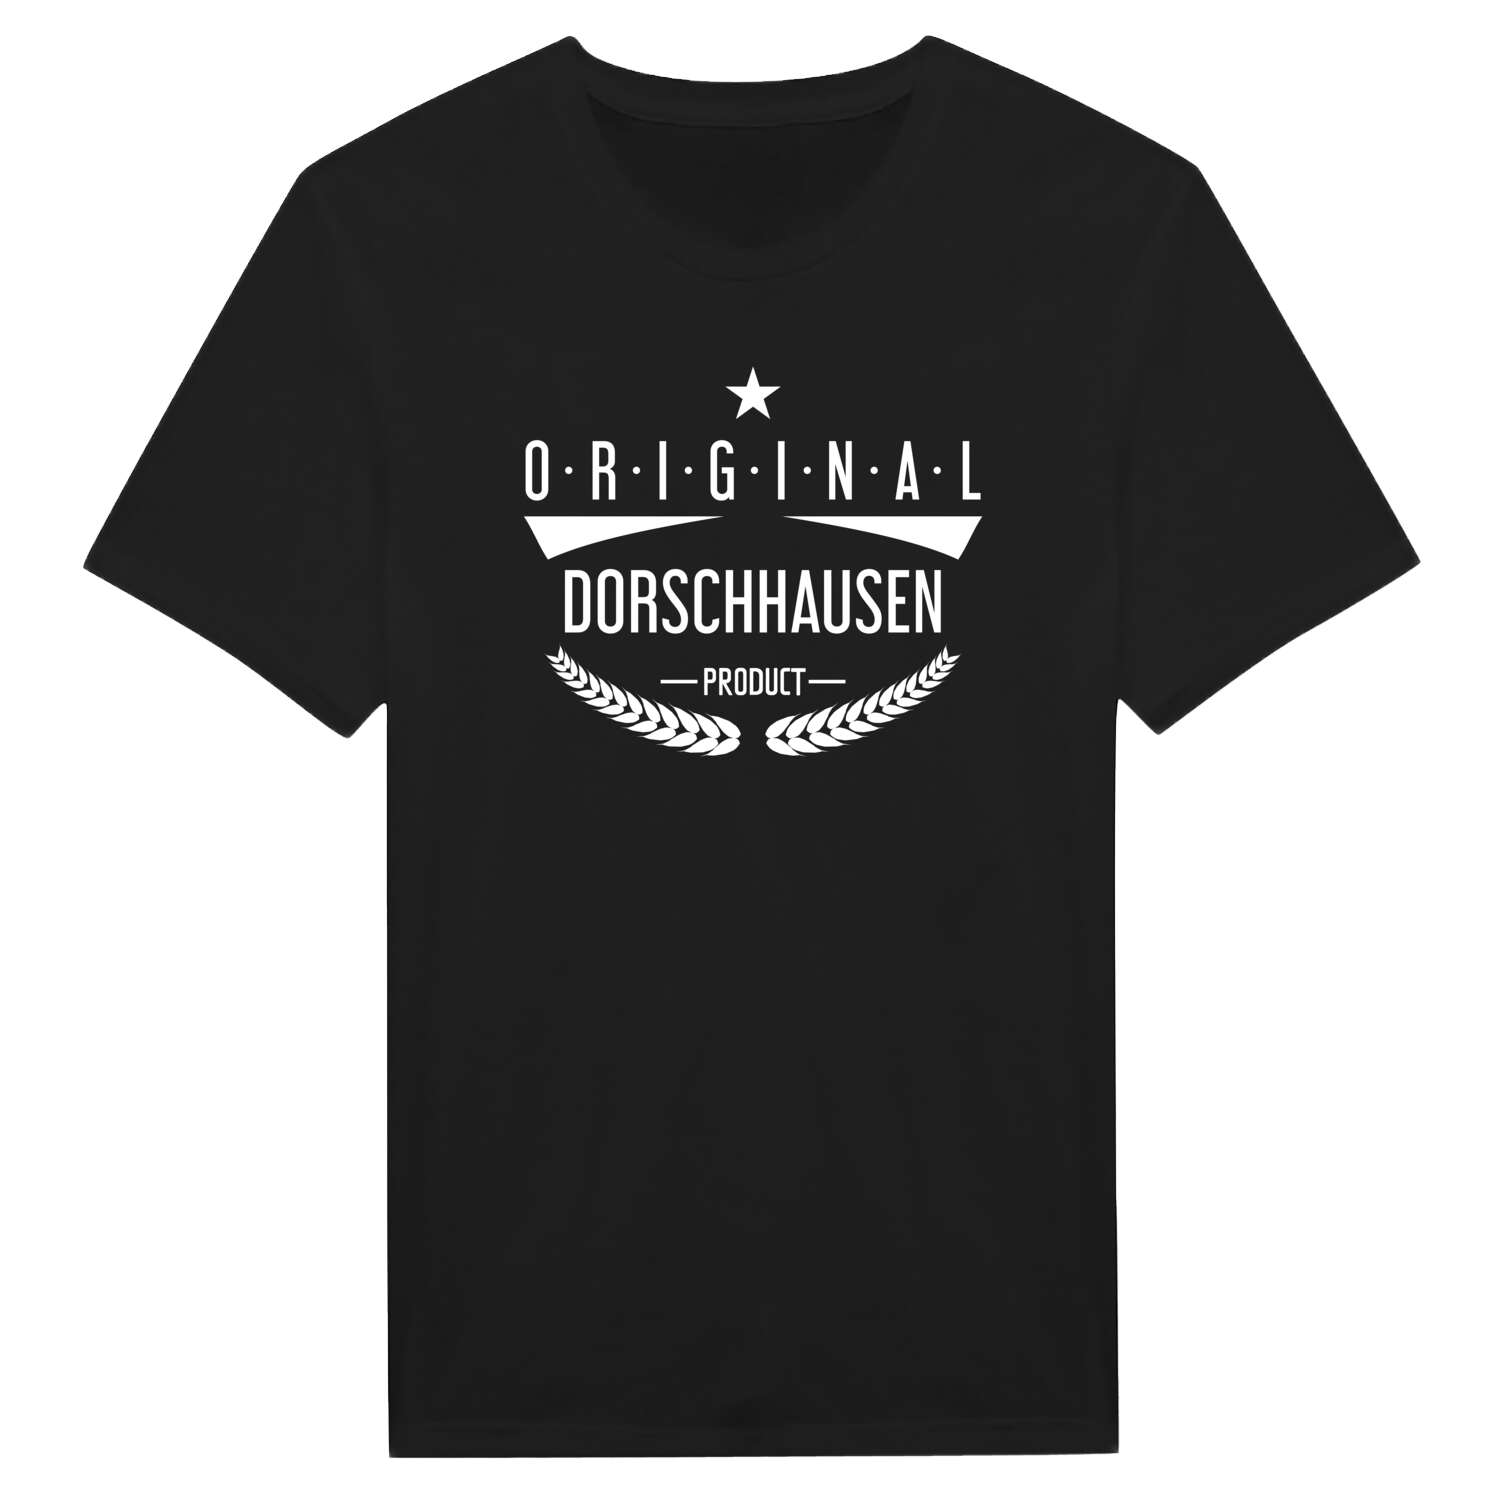 Dorschhausen T-Shirt »Original Product«